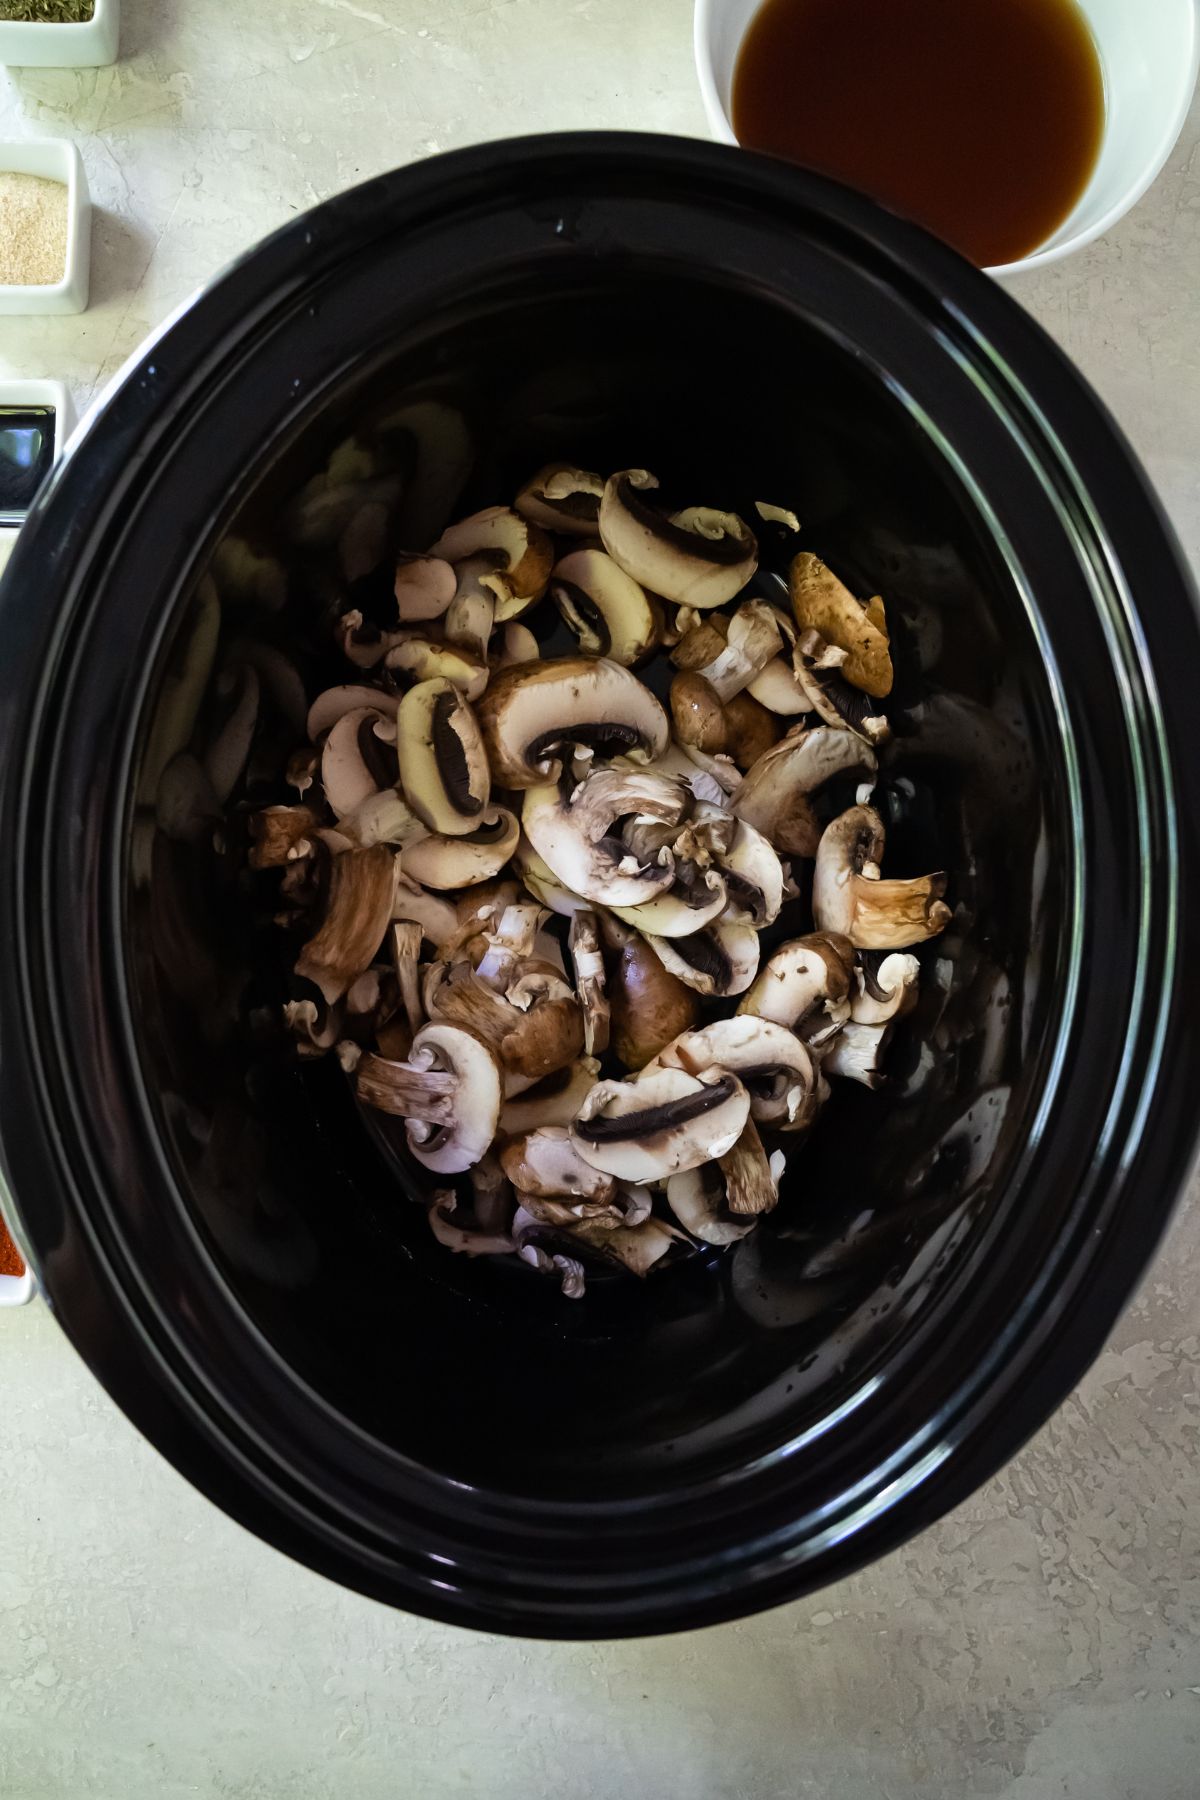 sliced mushrooms in a crockpot